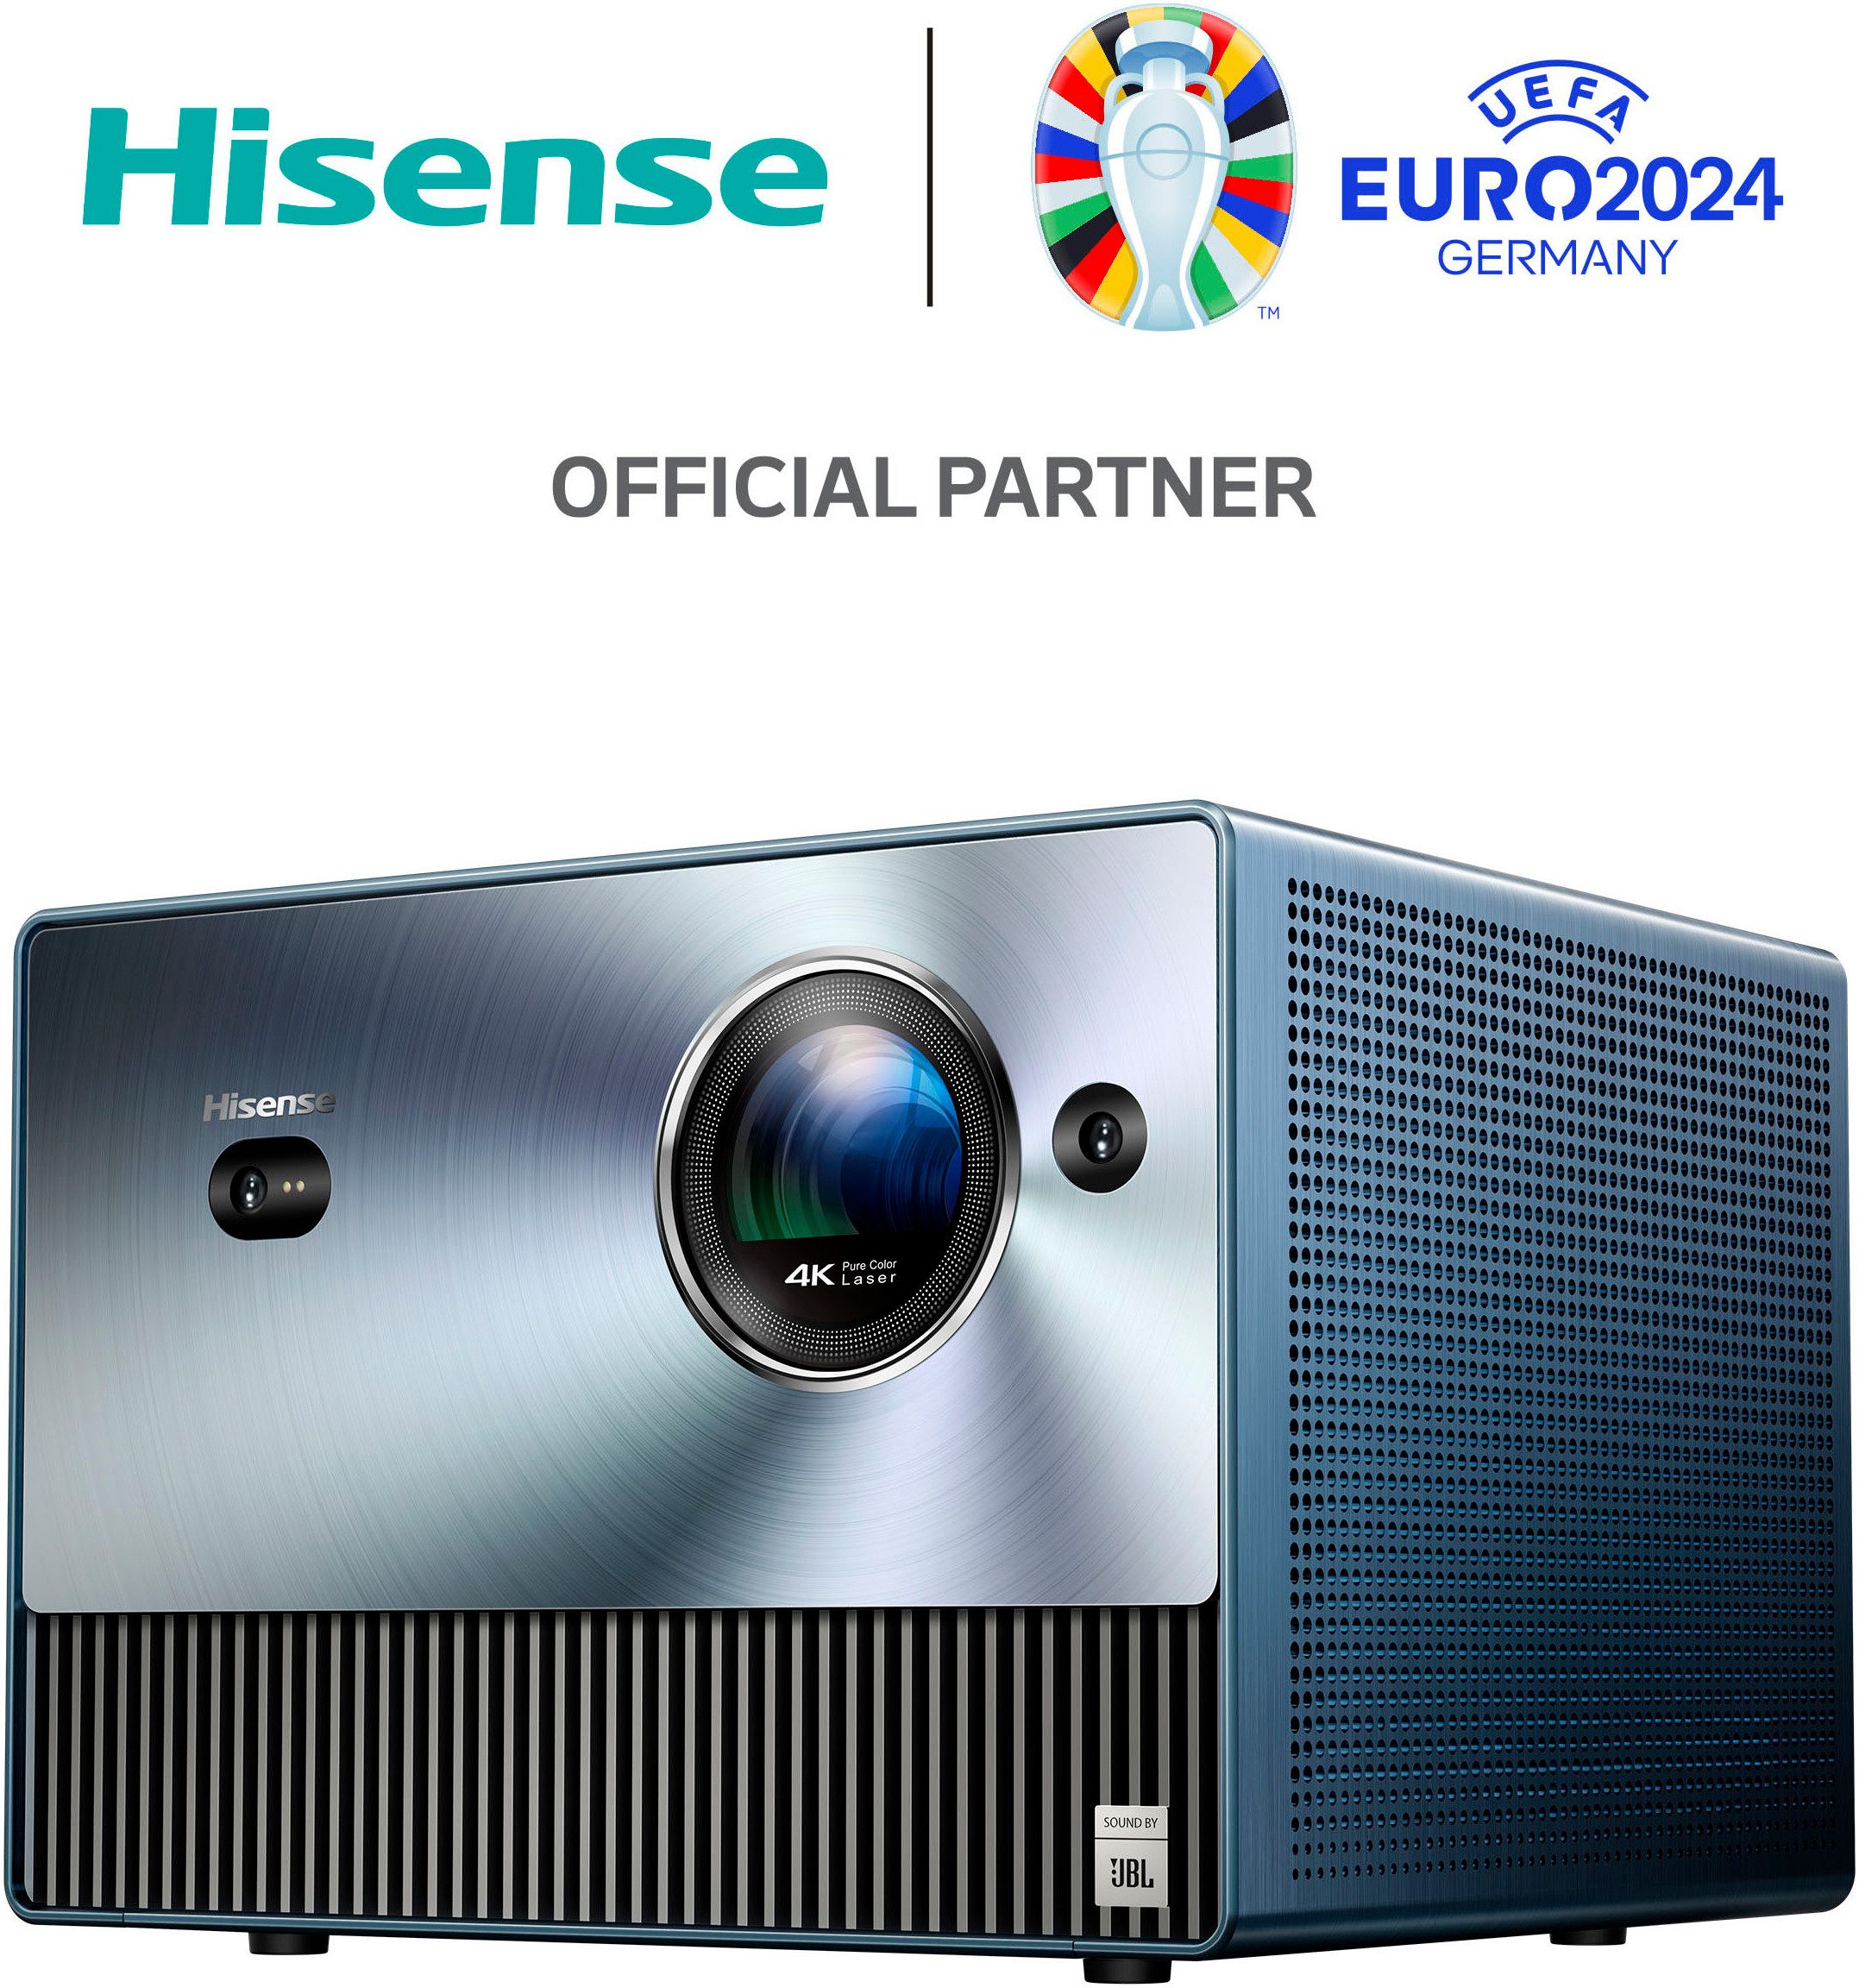 Hisense Hisense C1 Laser-TV (3840 x 2160 px, 4K UHD)